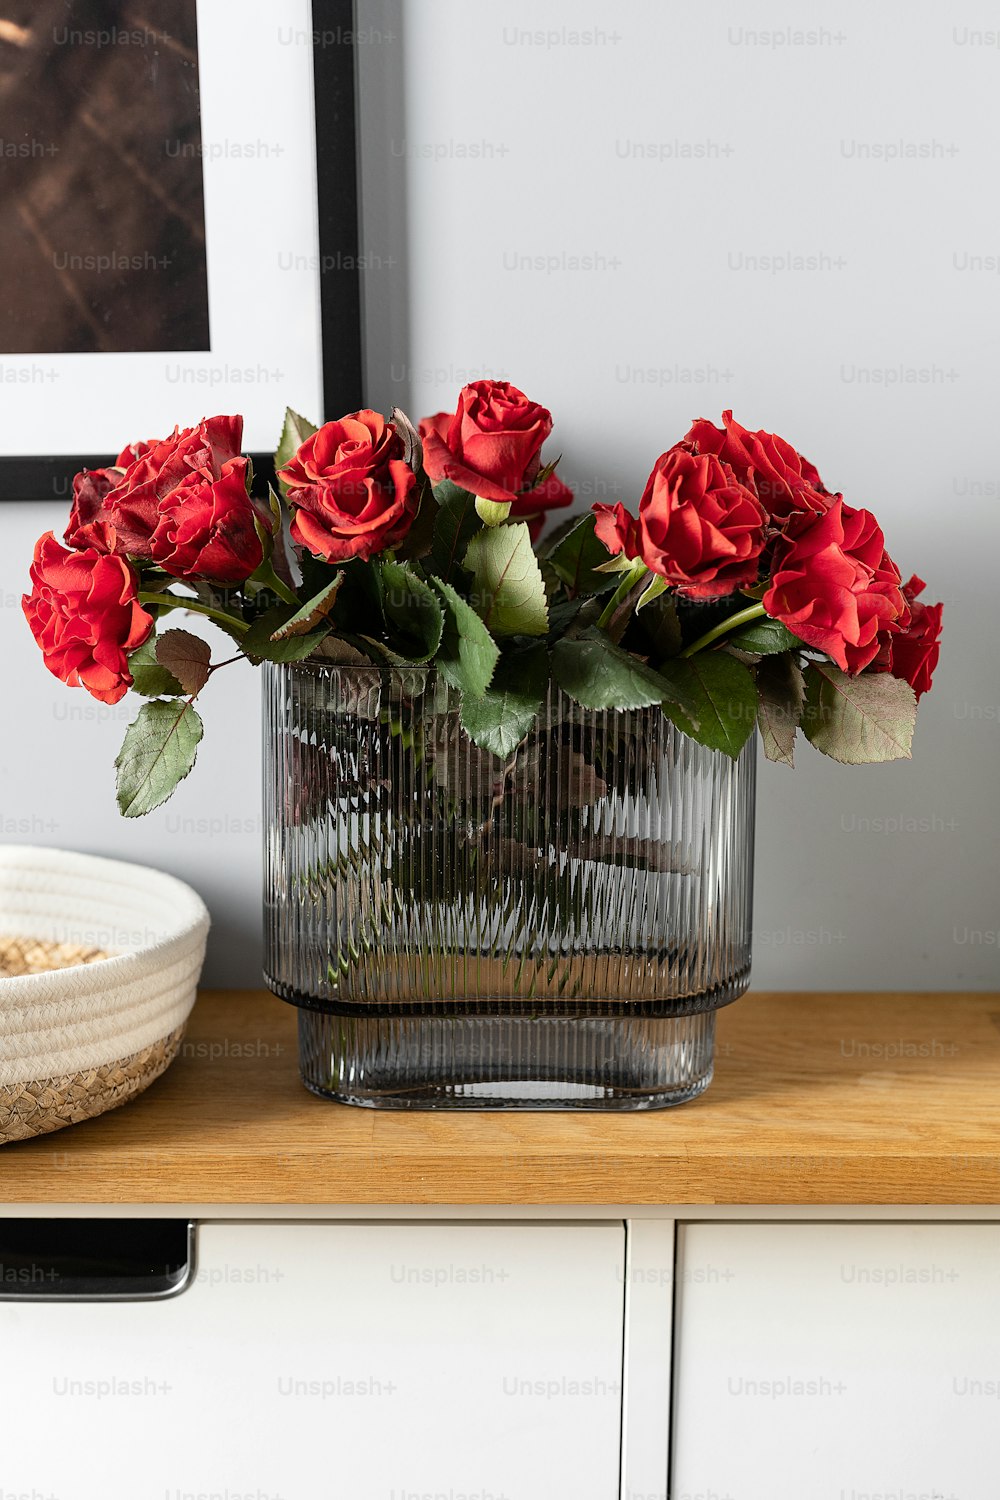 Un jarrón de vidrio lleno de rosas rojas encima de una mesa de madera